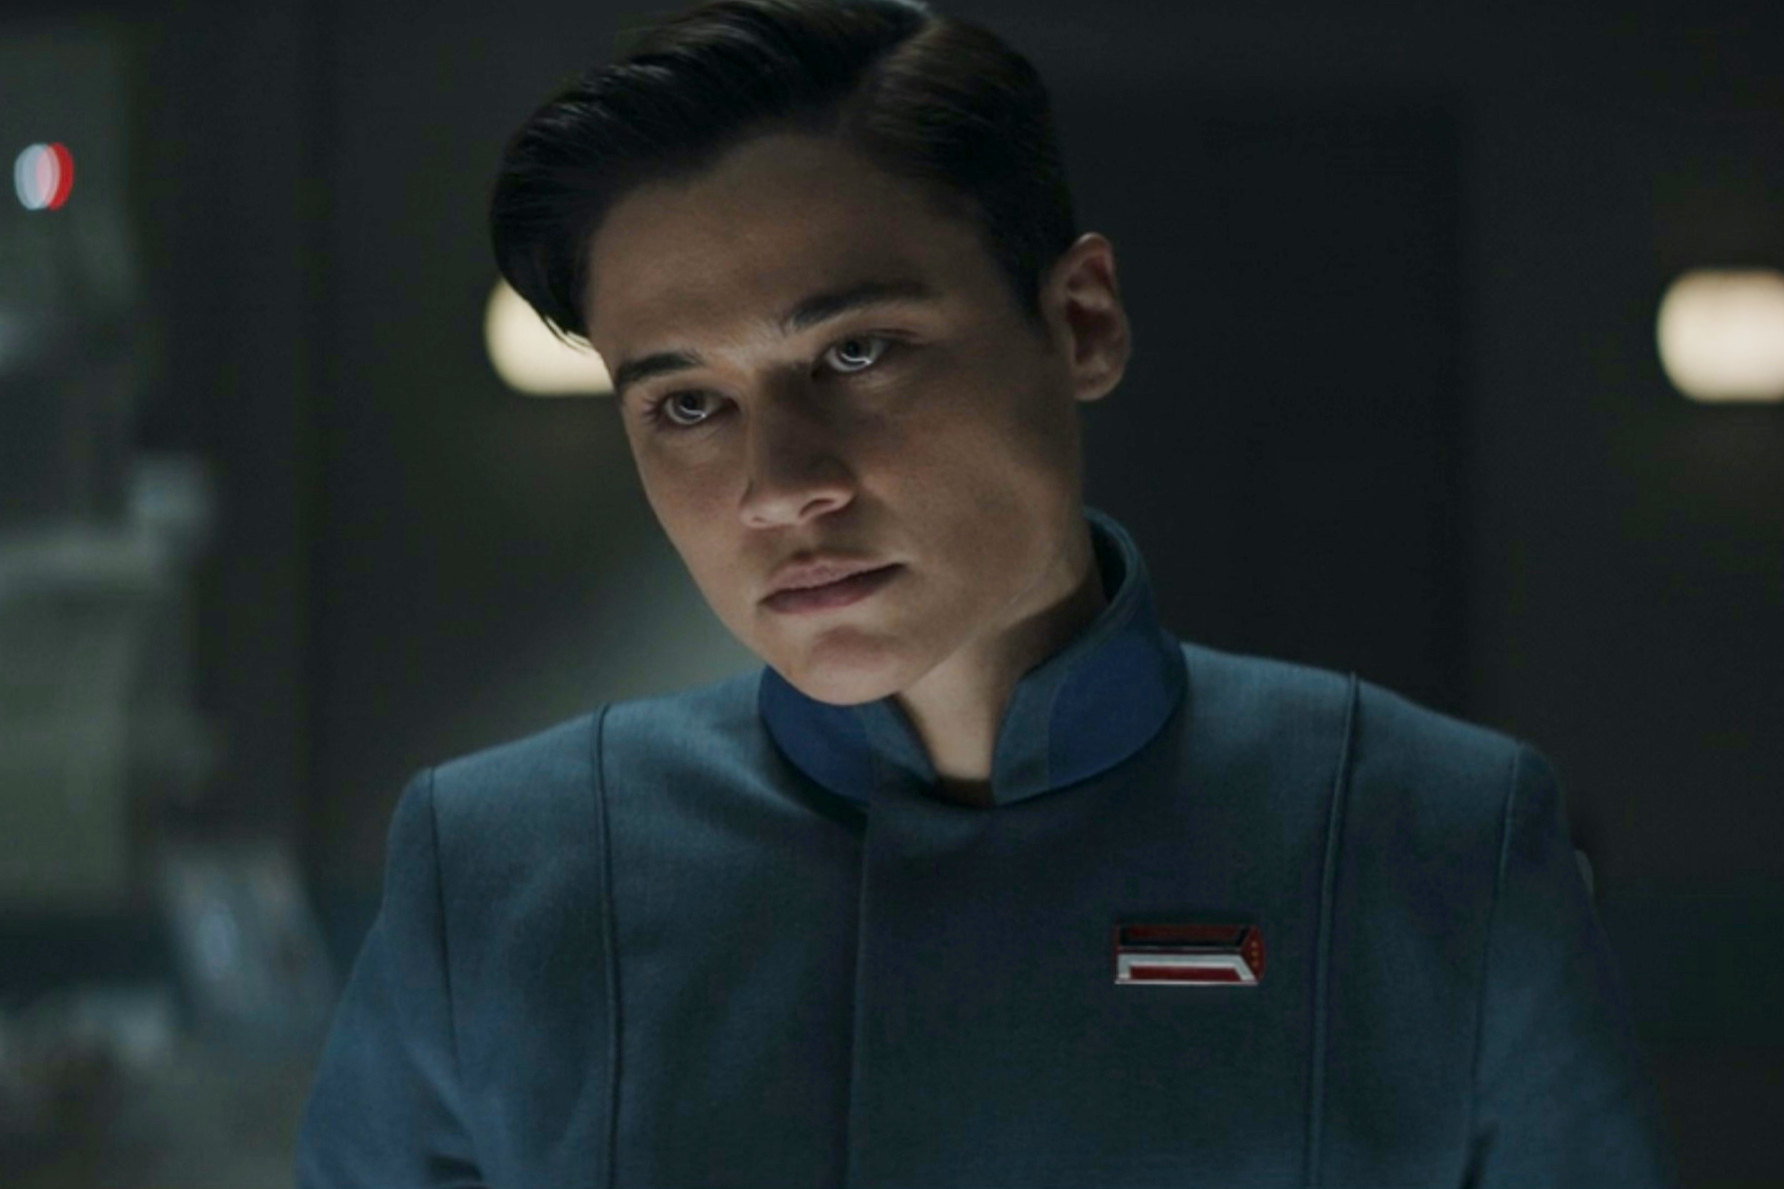 Elia Kane usa um uniforme da Nova República no episódio 3 da terceira temporada de The Mandalorian.